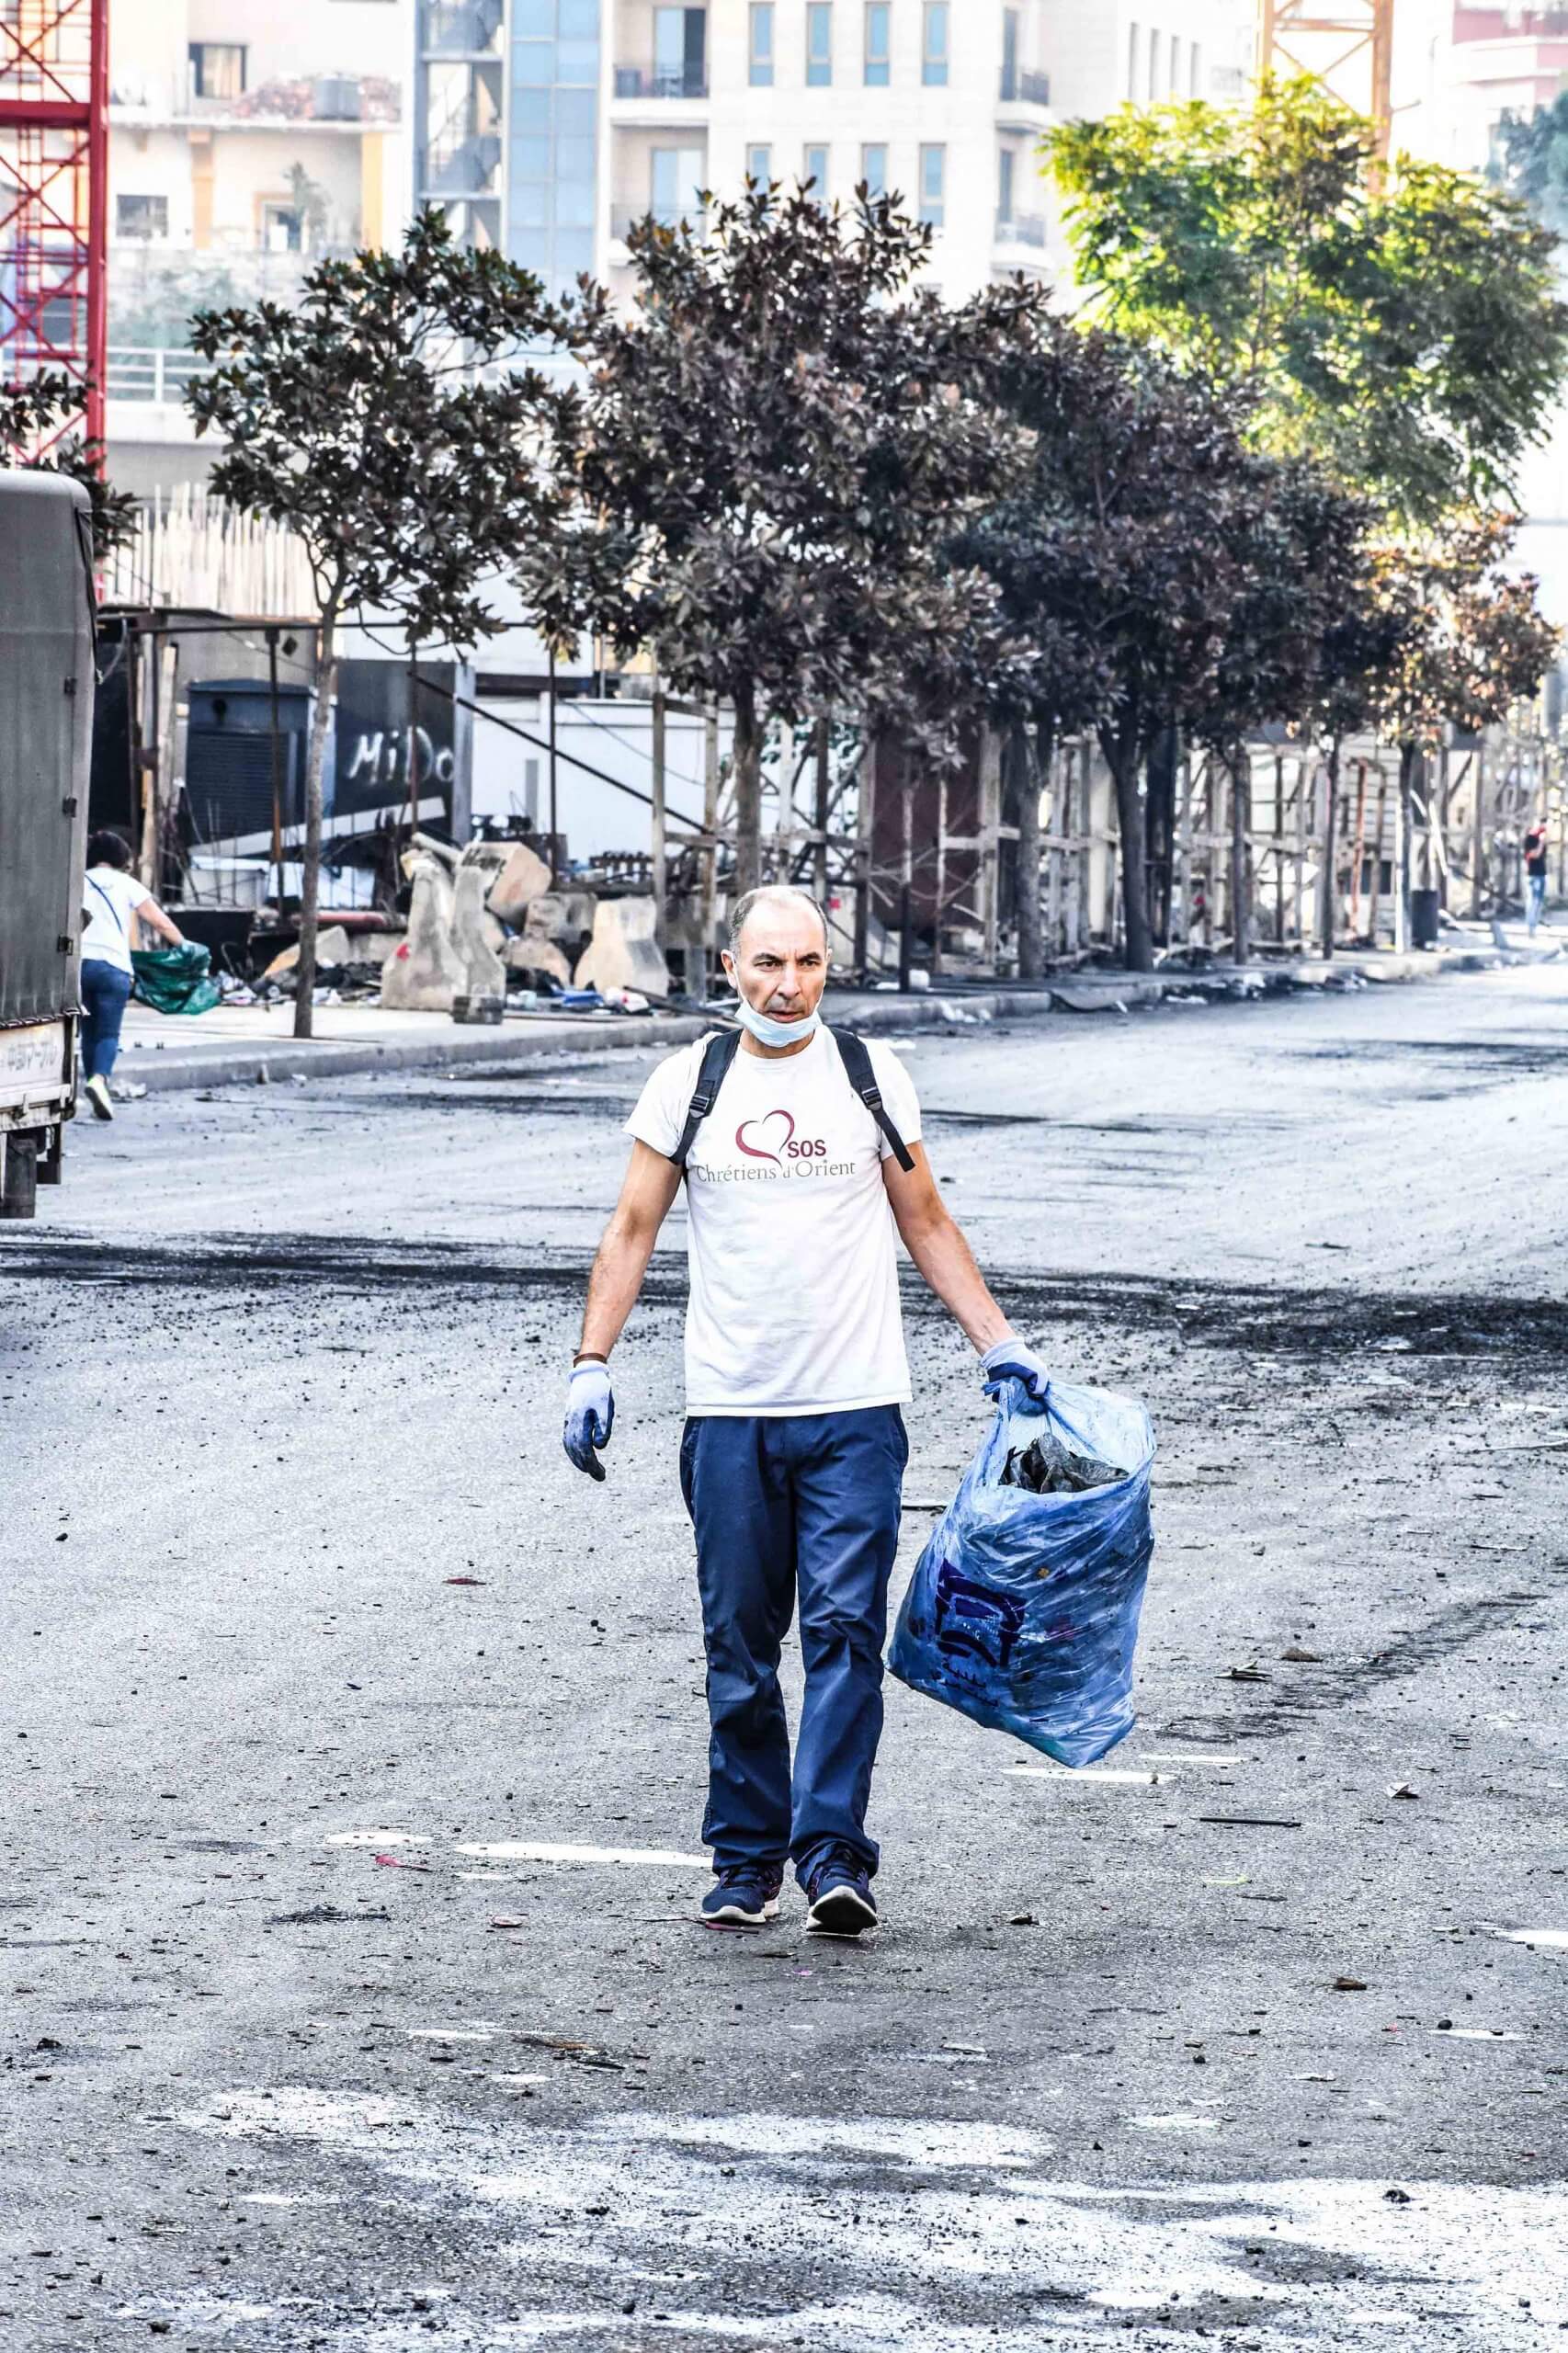 المتطوعون يُشاركون في تنظيف ساحة الشهداء في بيروت بعدَ الاحتجاجات